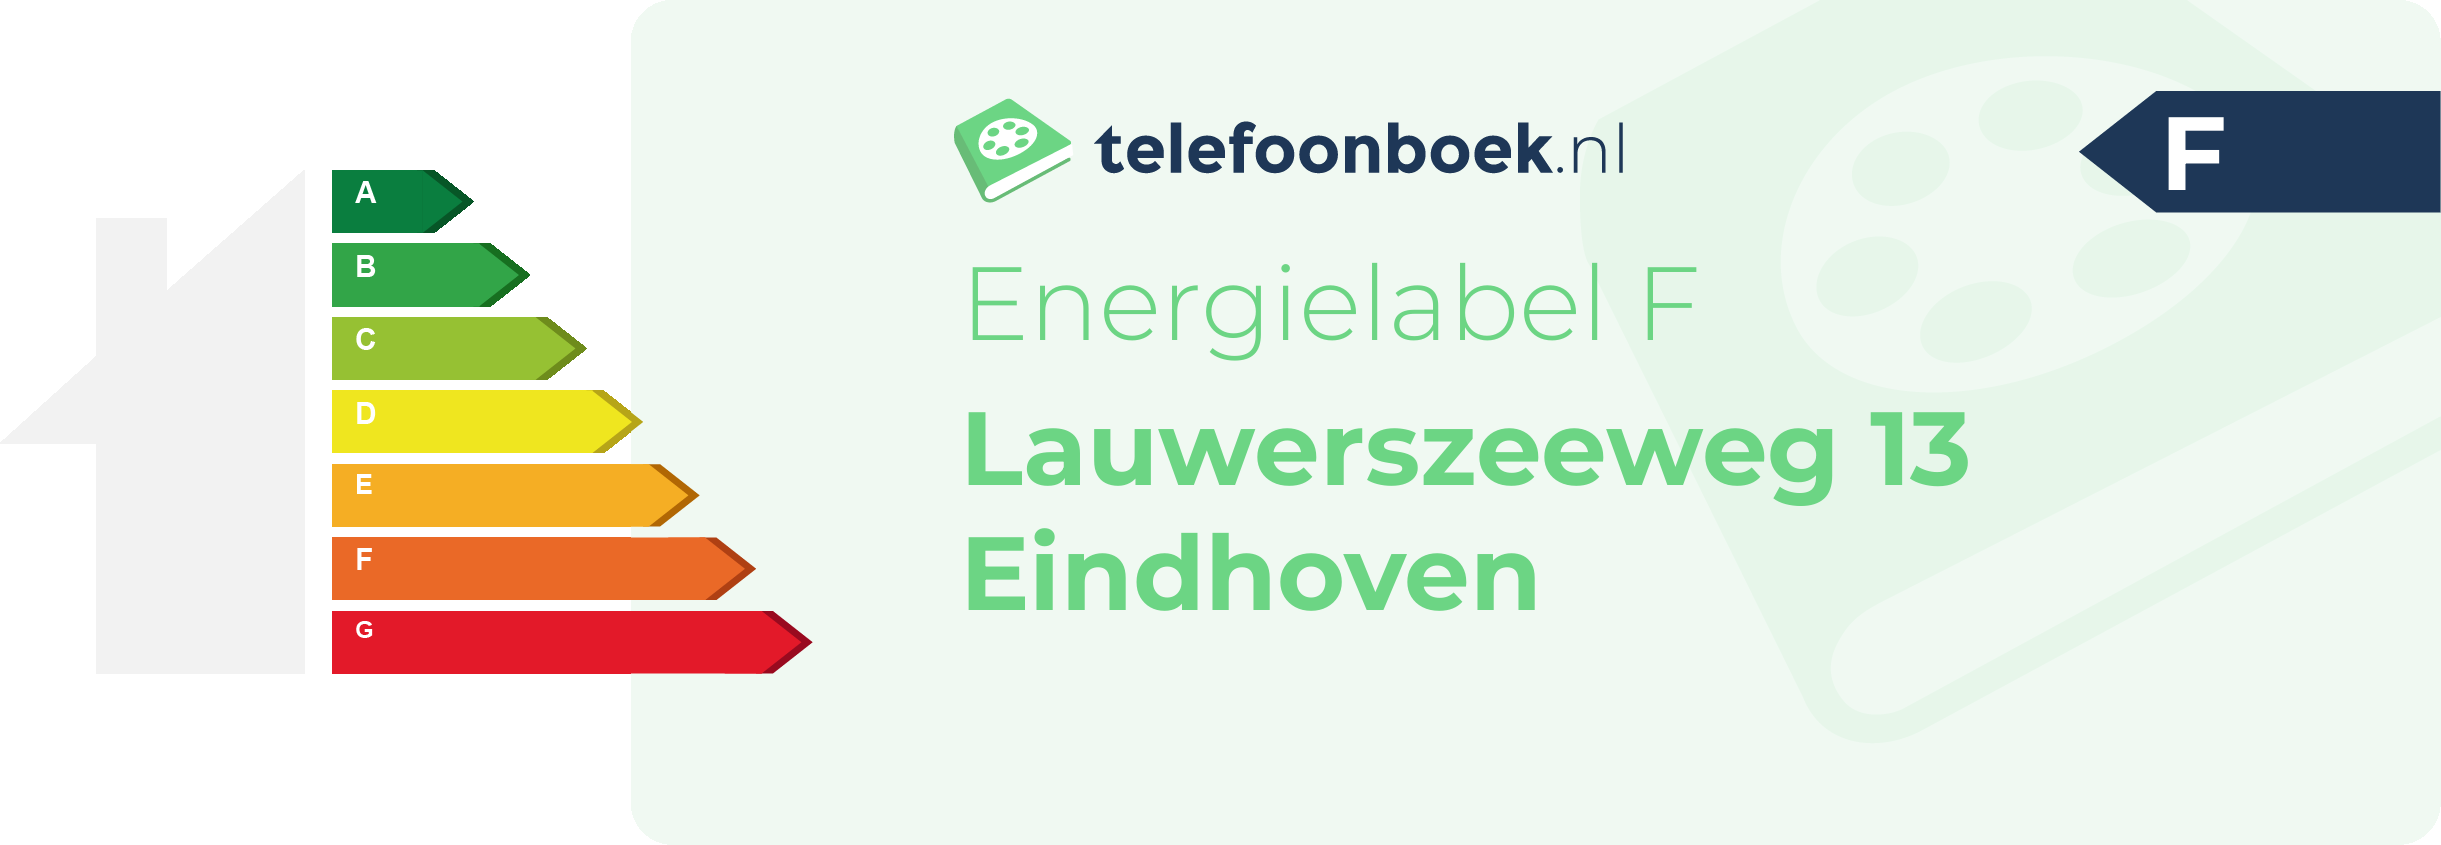 Energielabel Lauwerszeeweg 13 Eindhoven